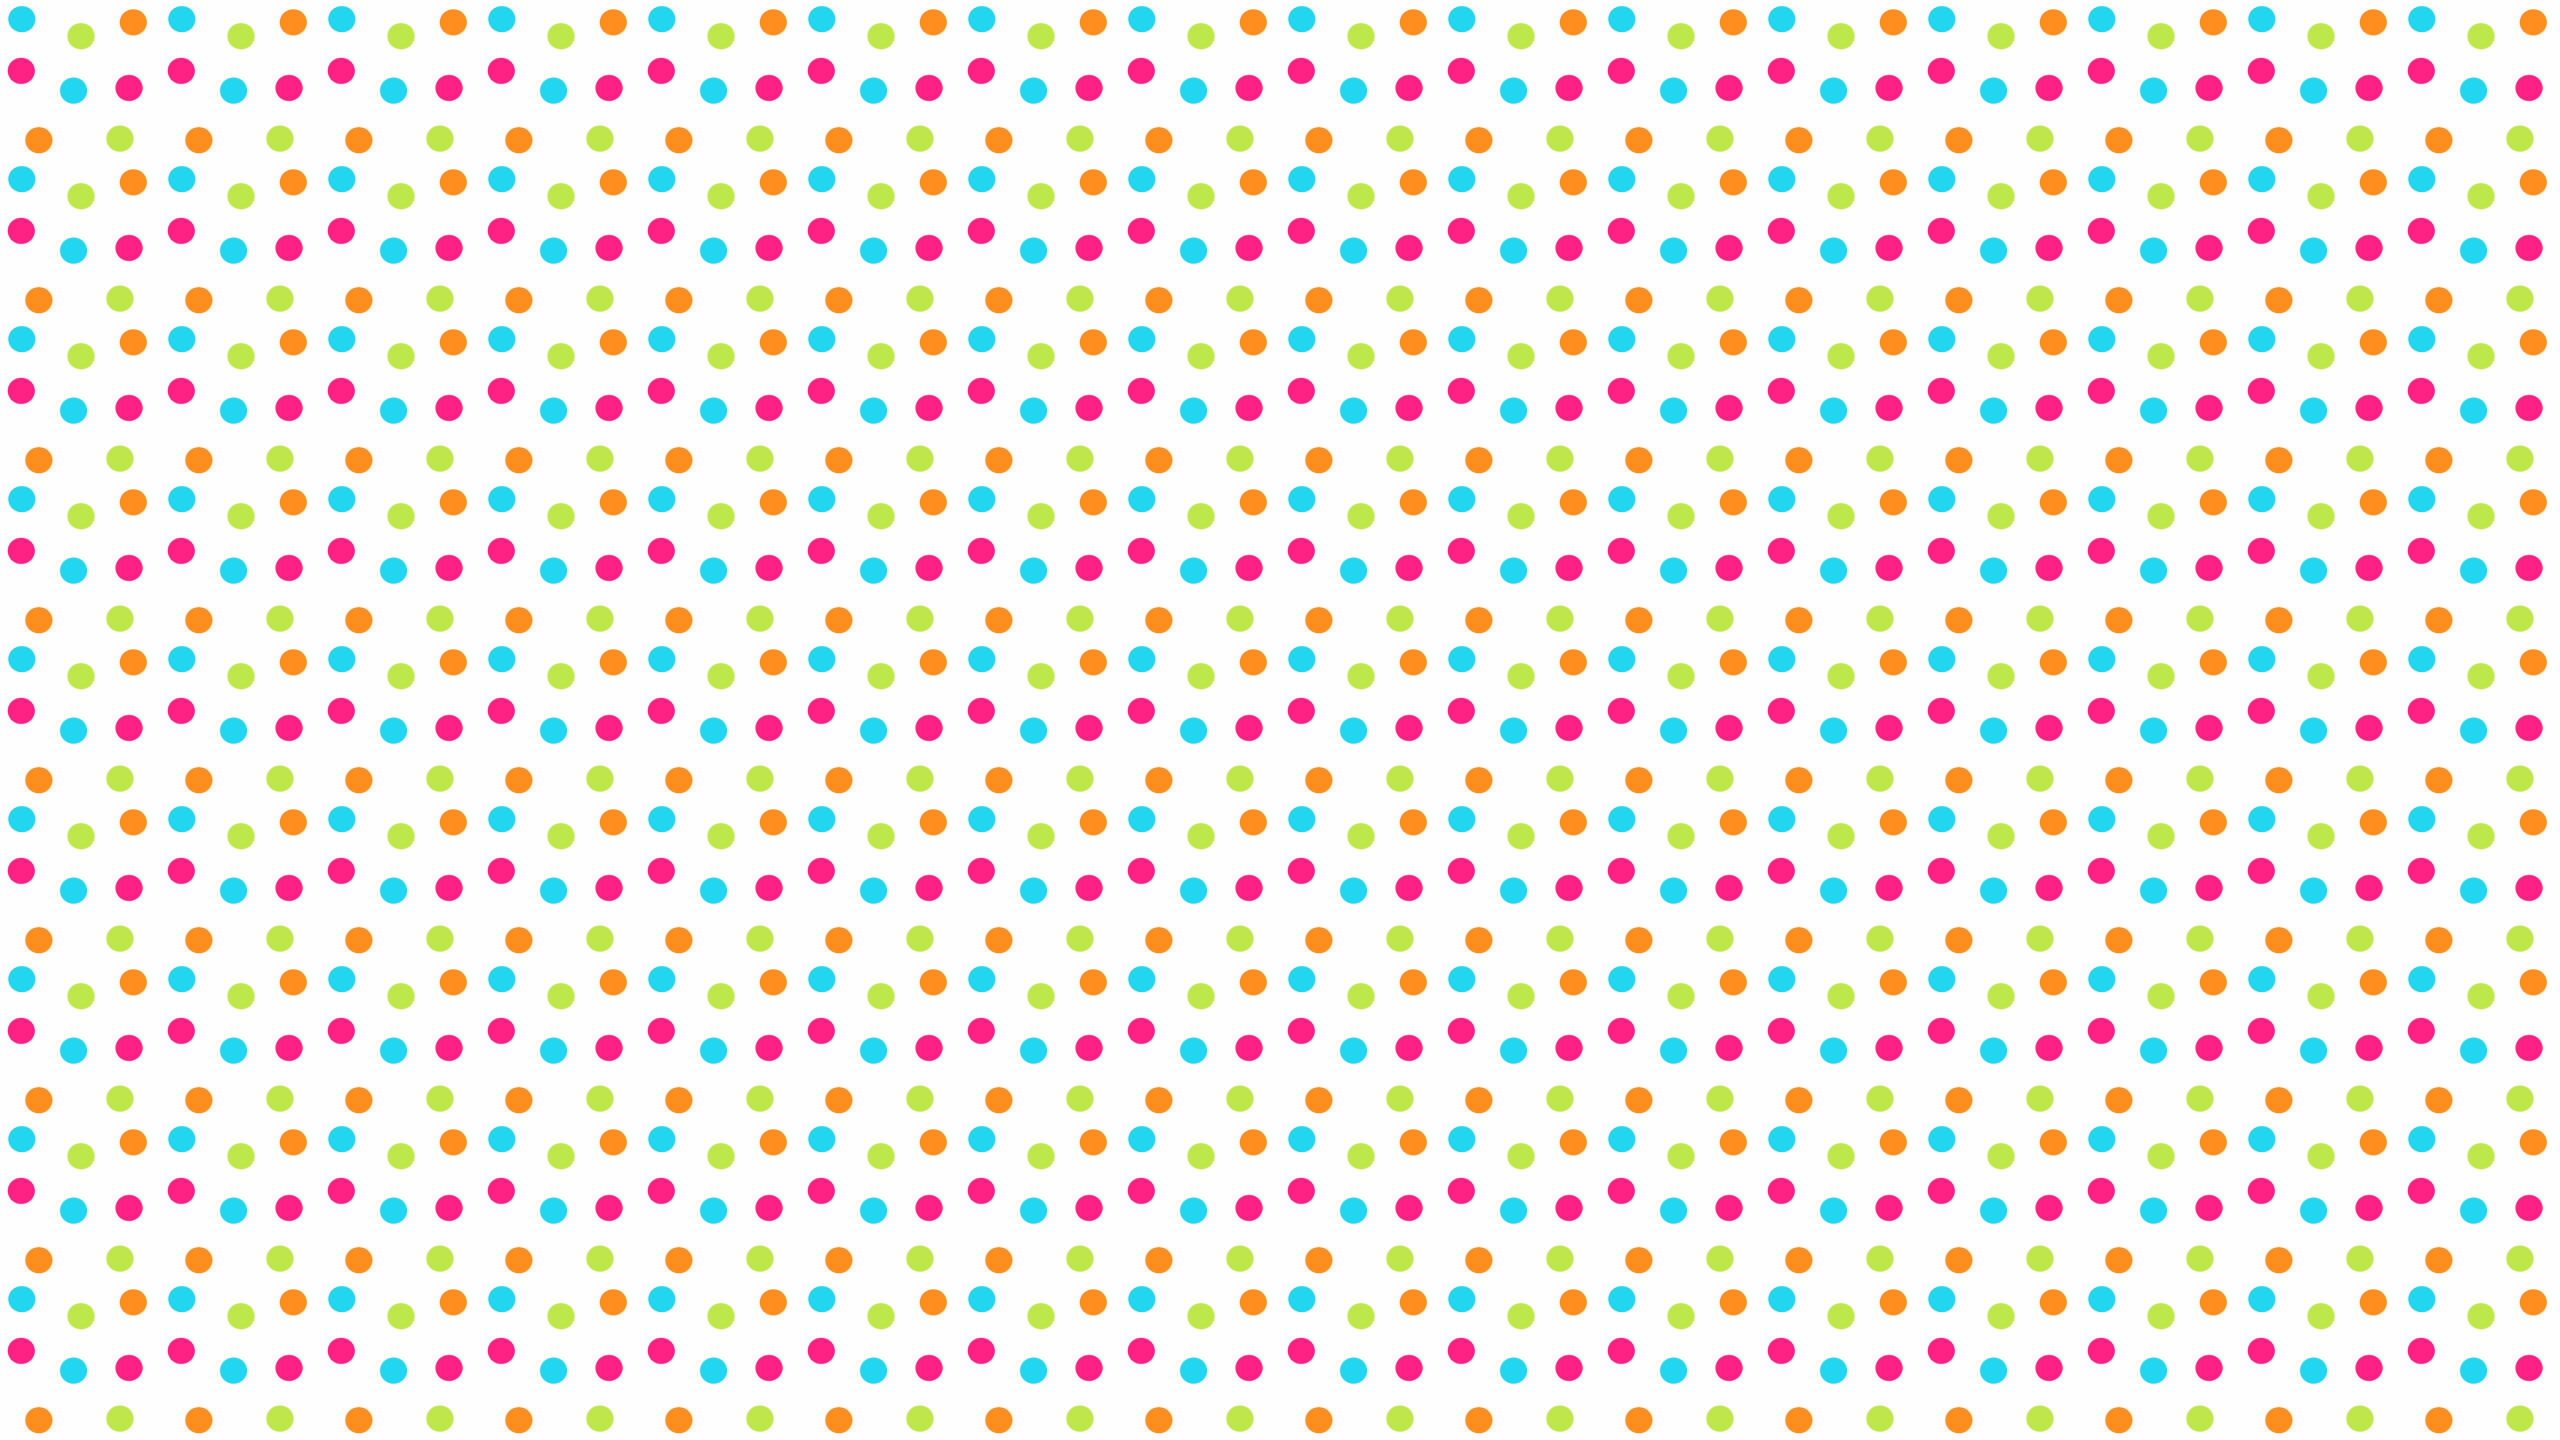 2560x1440 20 Cool Polka Dot Wallpapers 